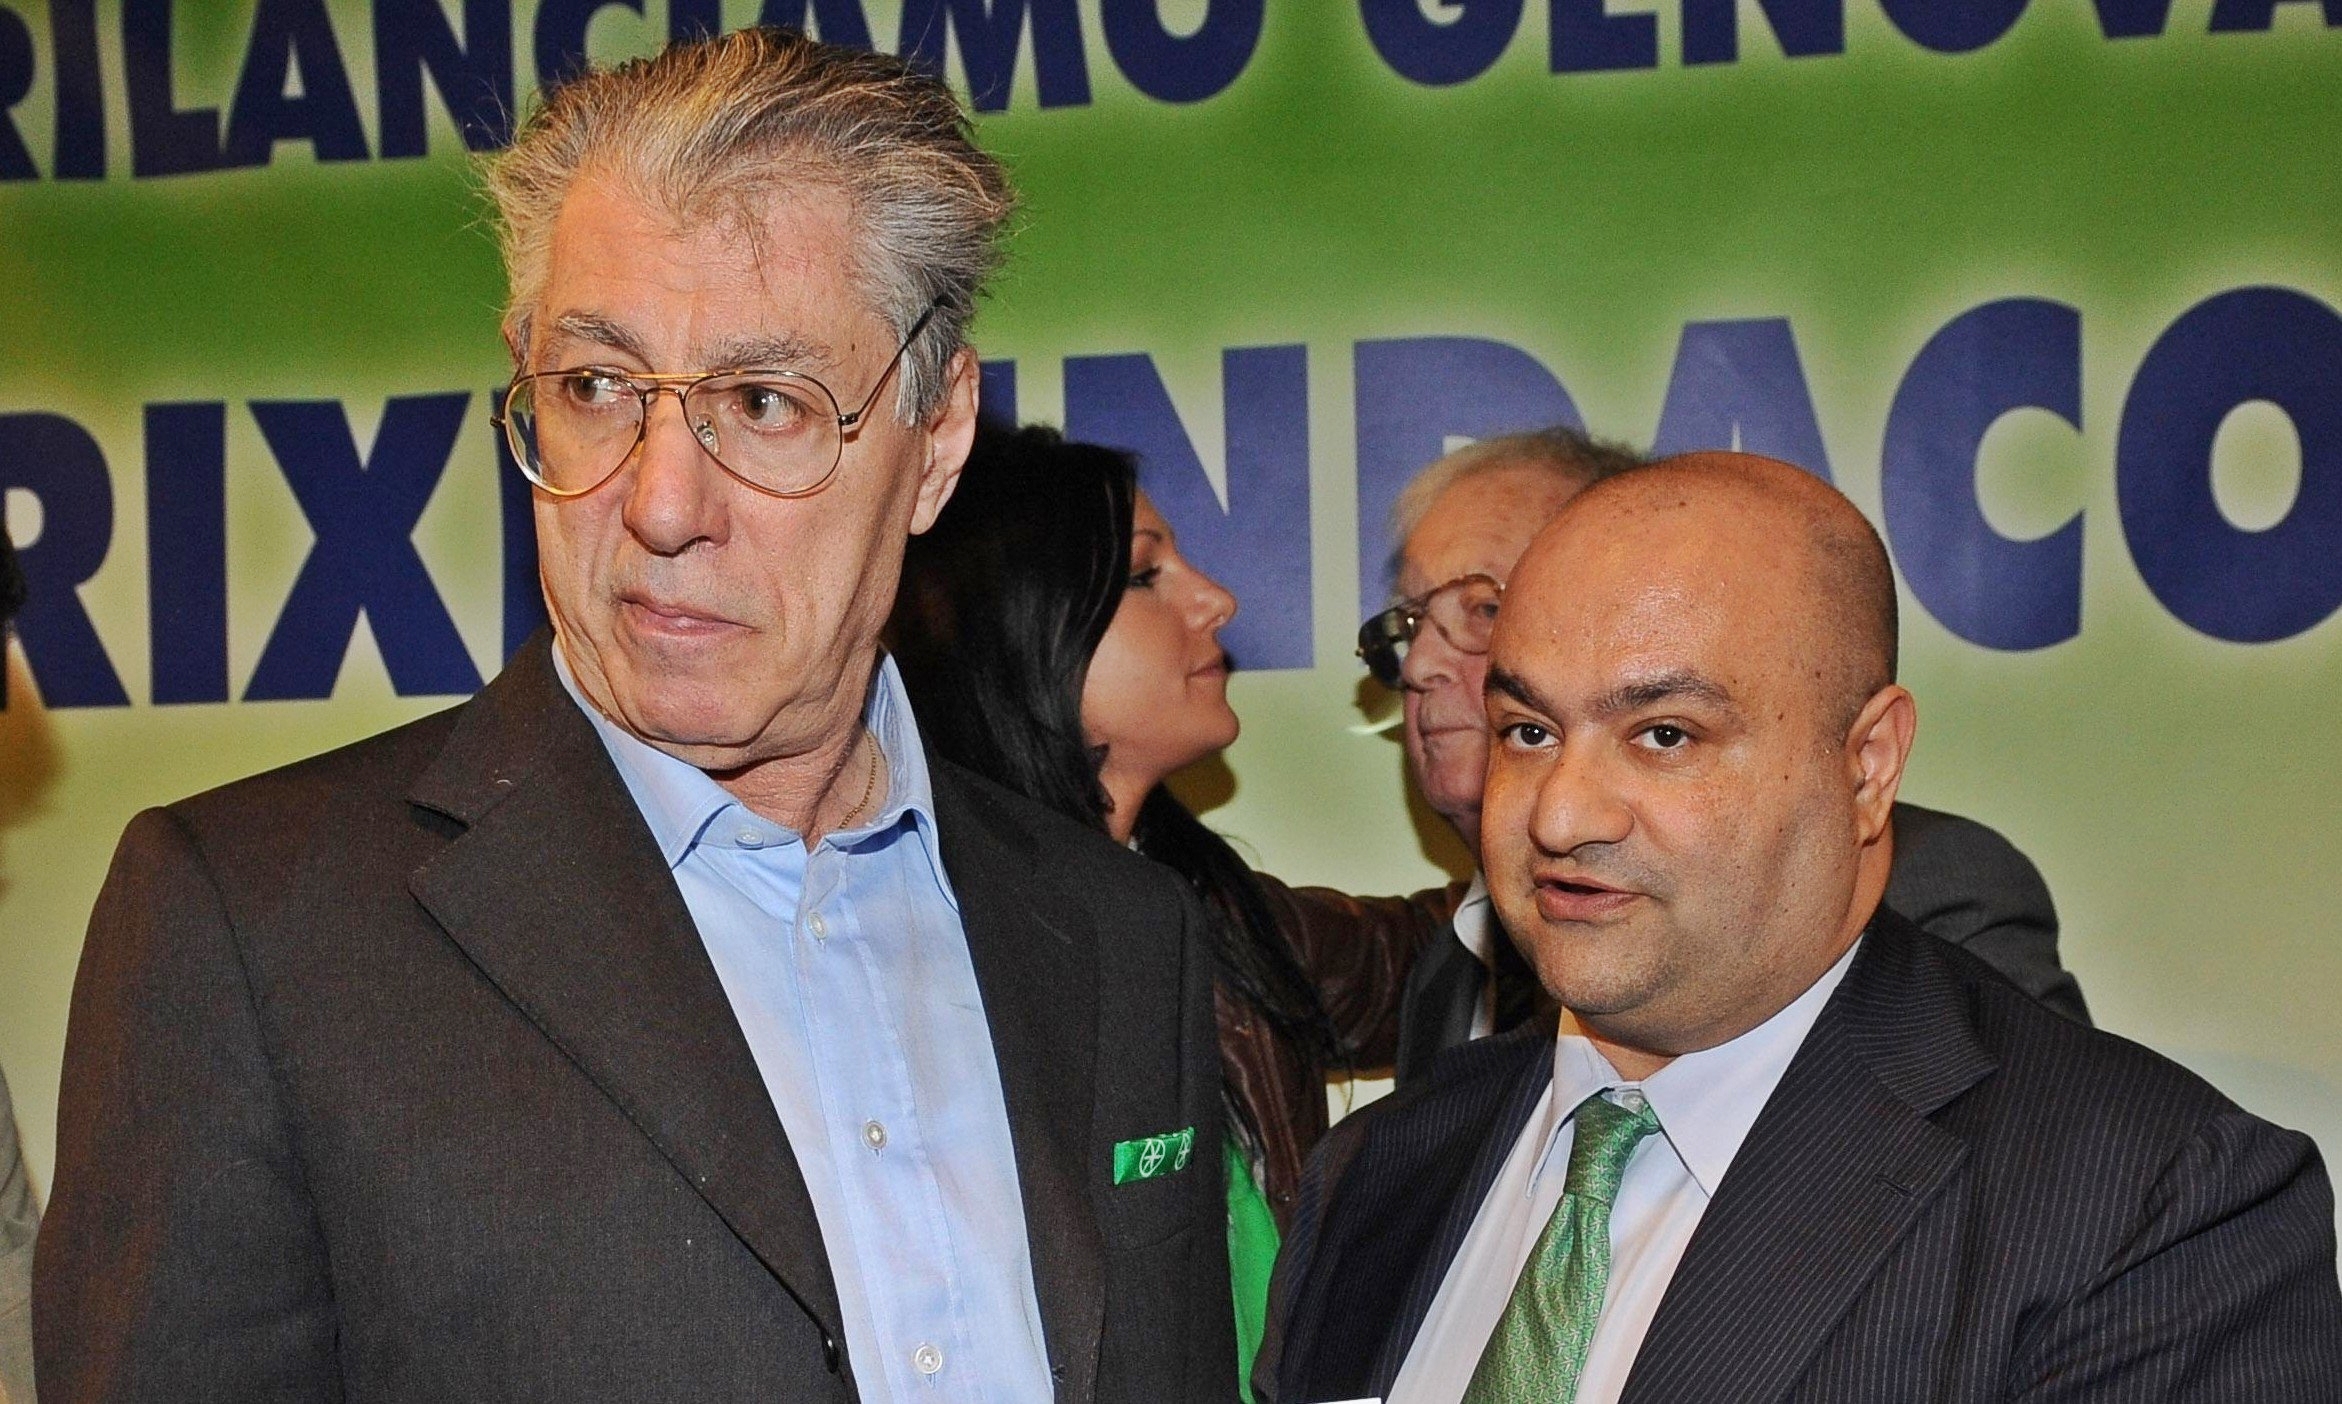 Nella foto l'ex Segretario della Lega, Umberto Bossi (a sinistra) e l'ex tesoriere della Lega, Belsito (a destra).